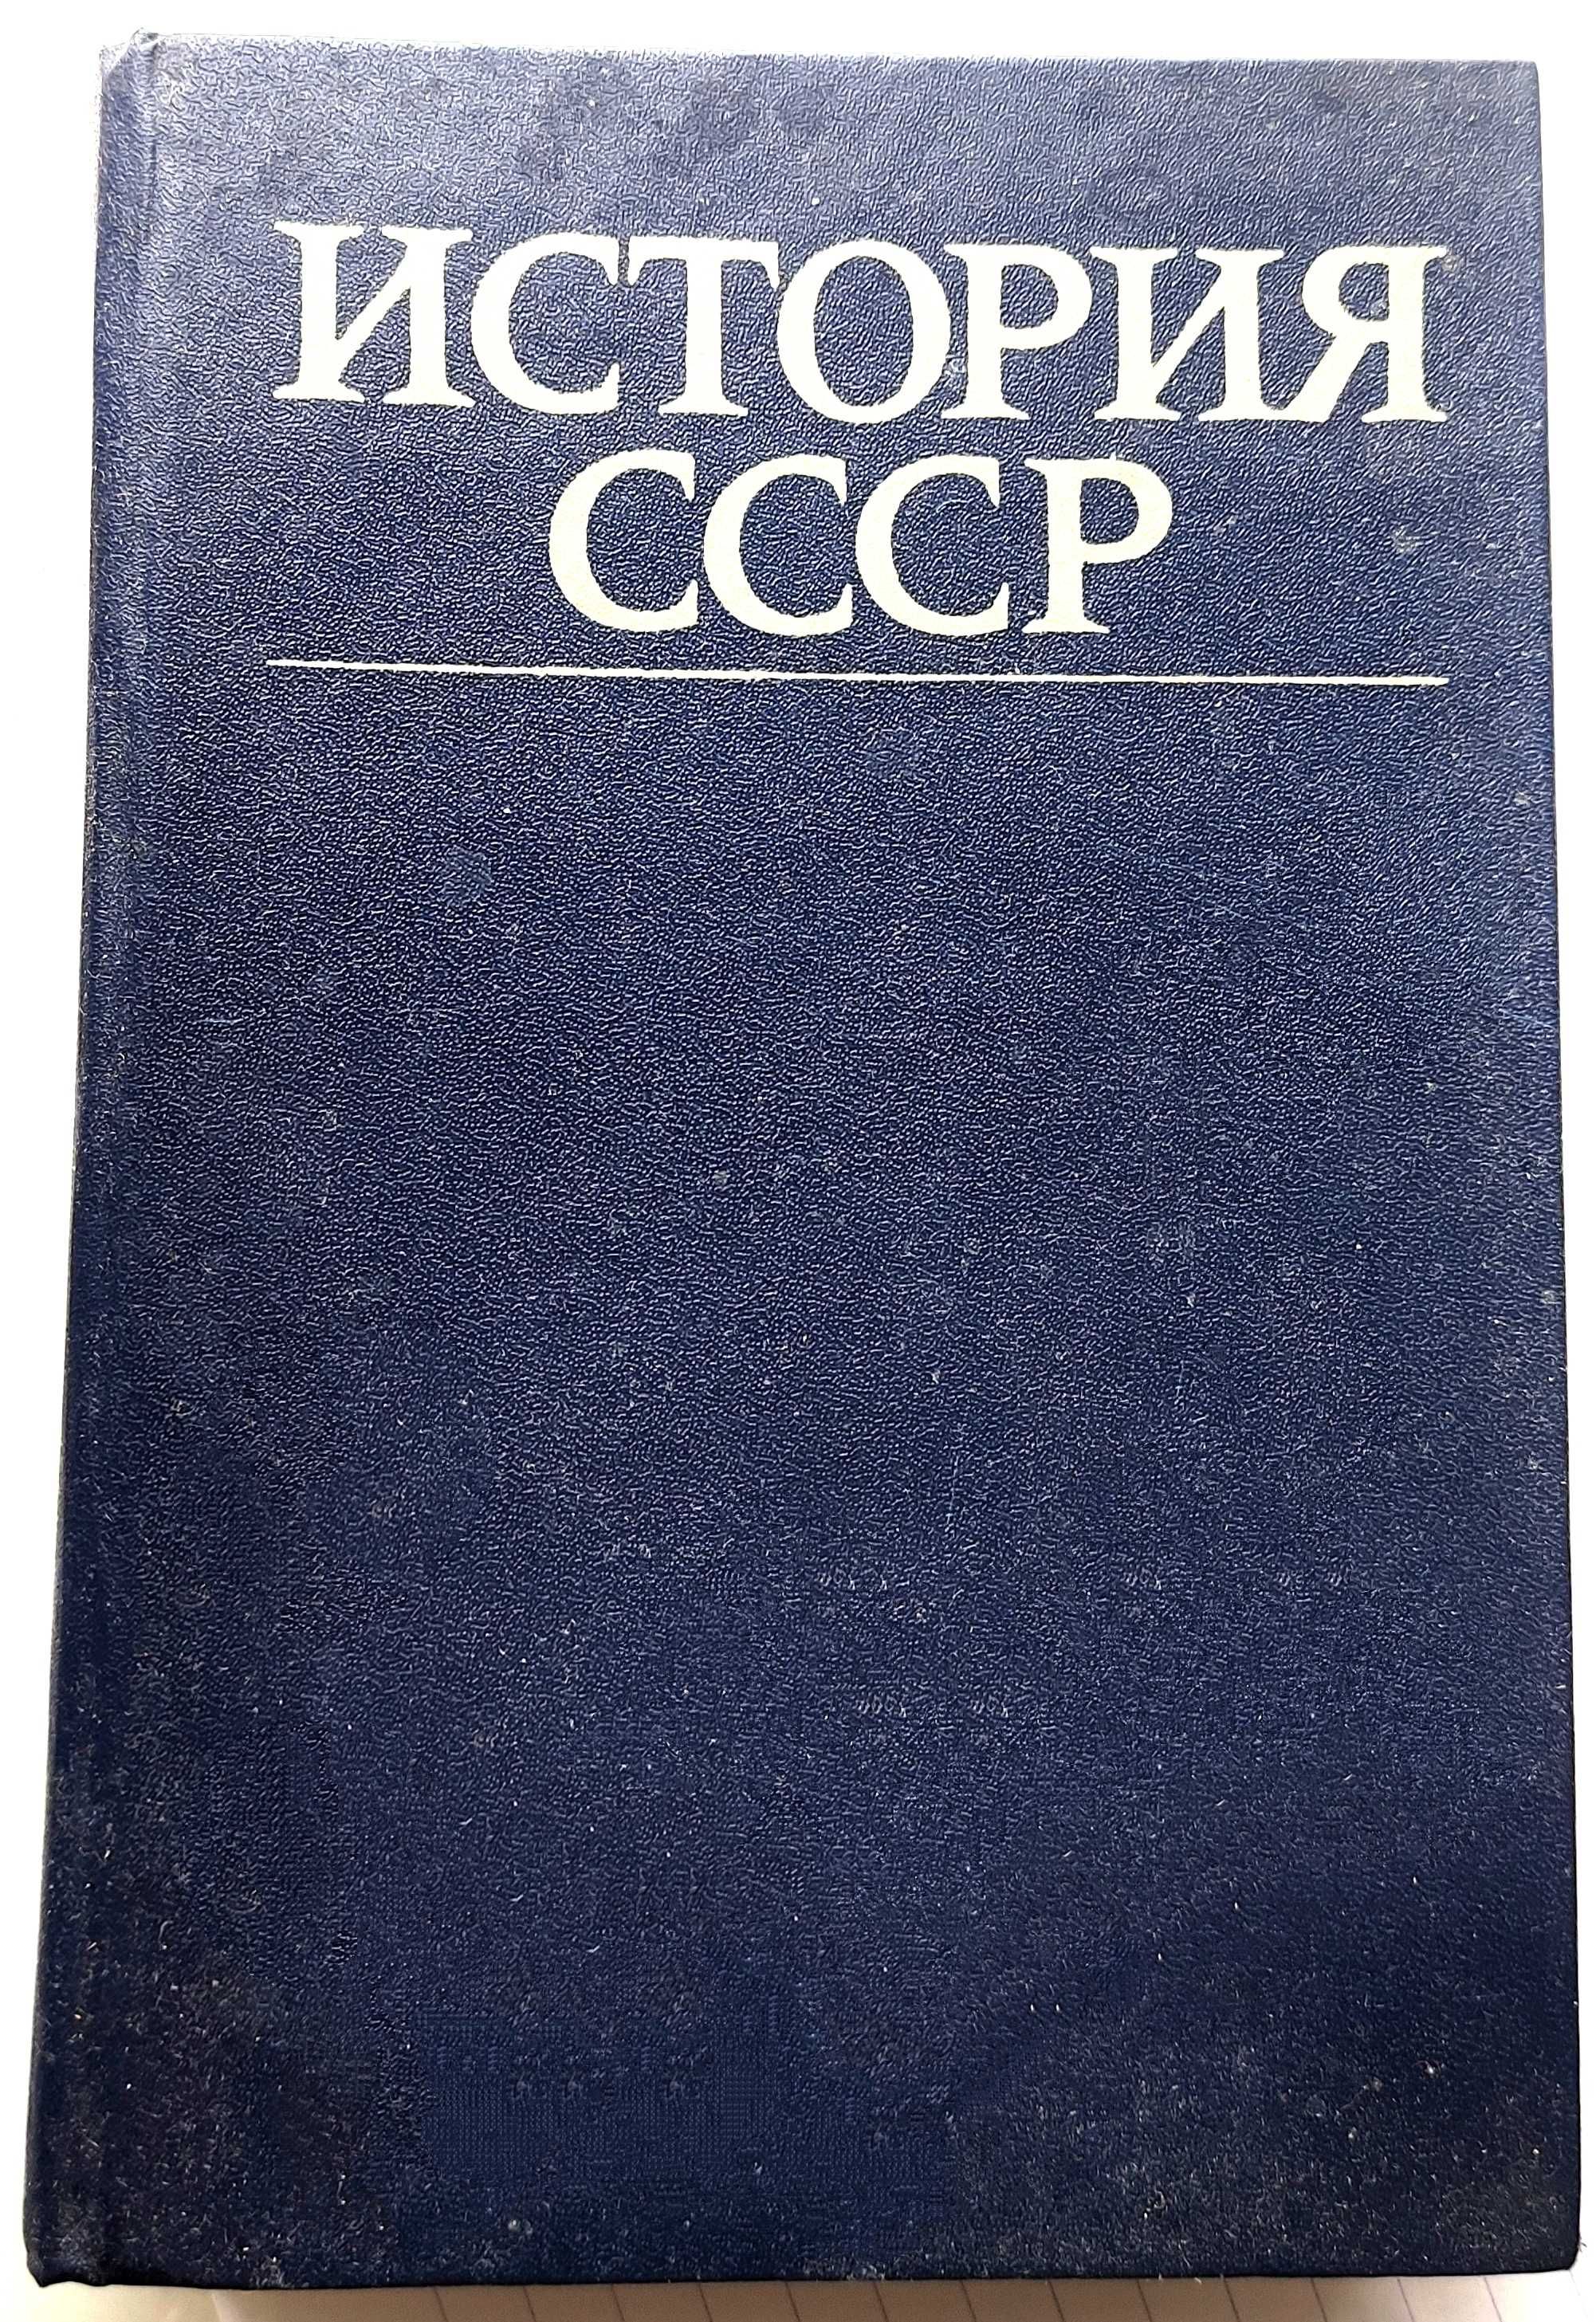 История СССР - Эпоха Социализма. Под Ред. Сераева, 1983